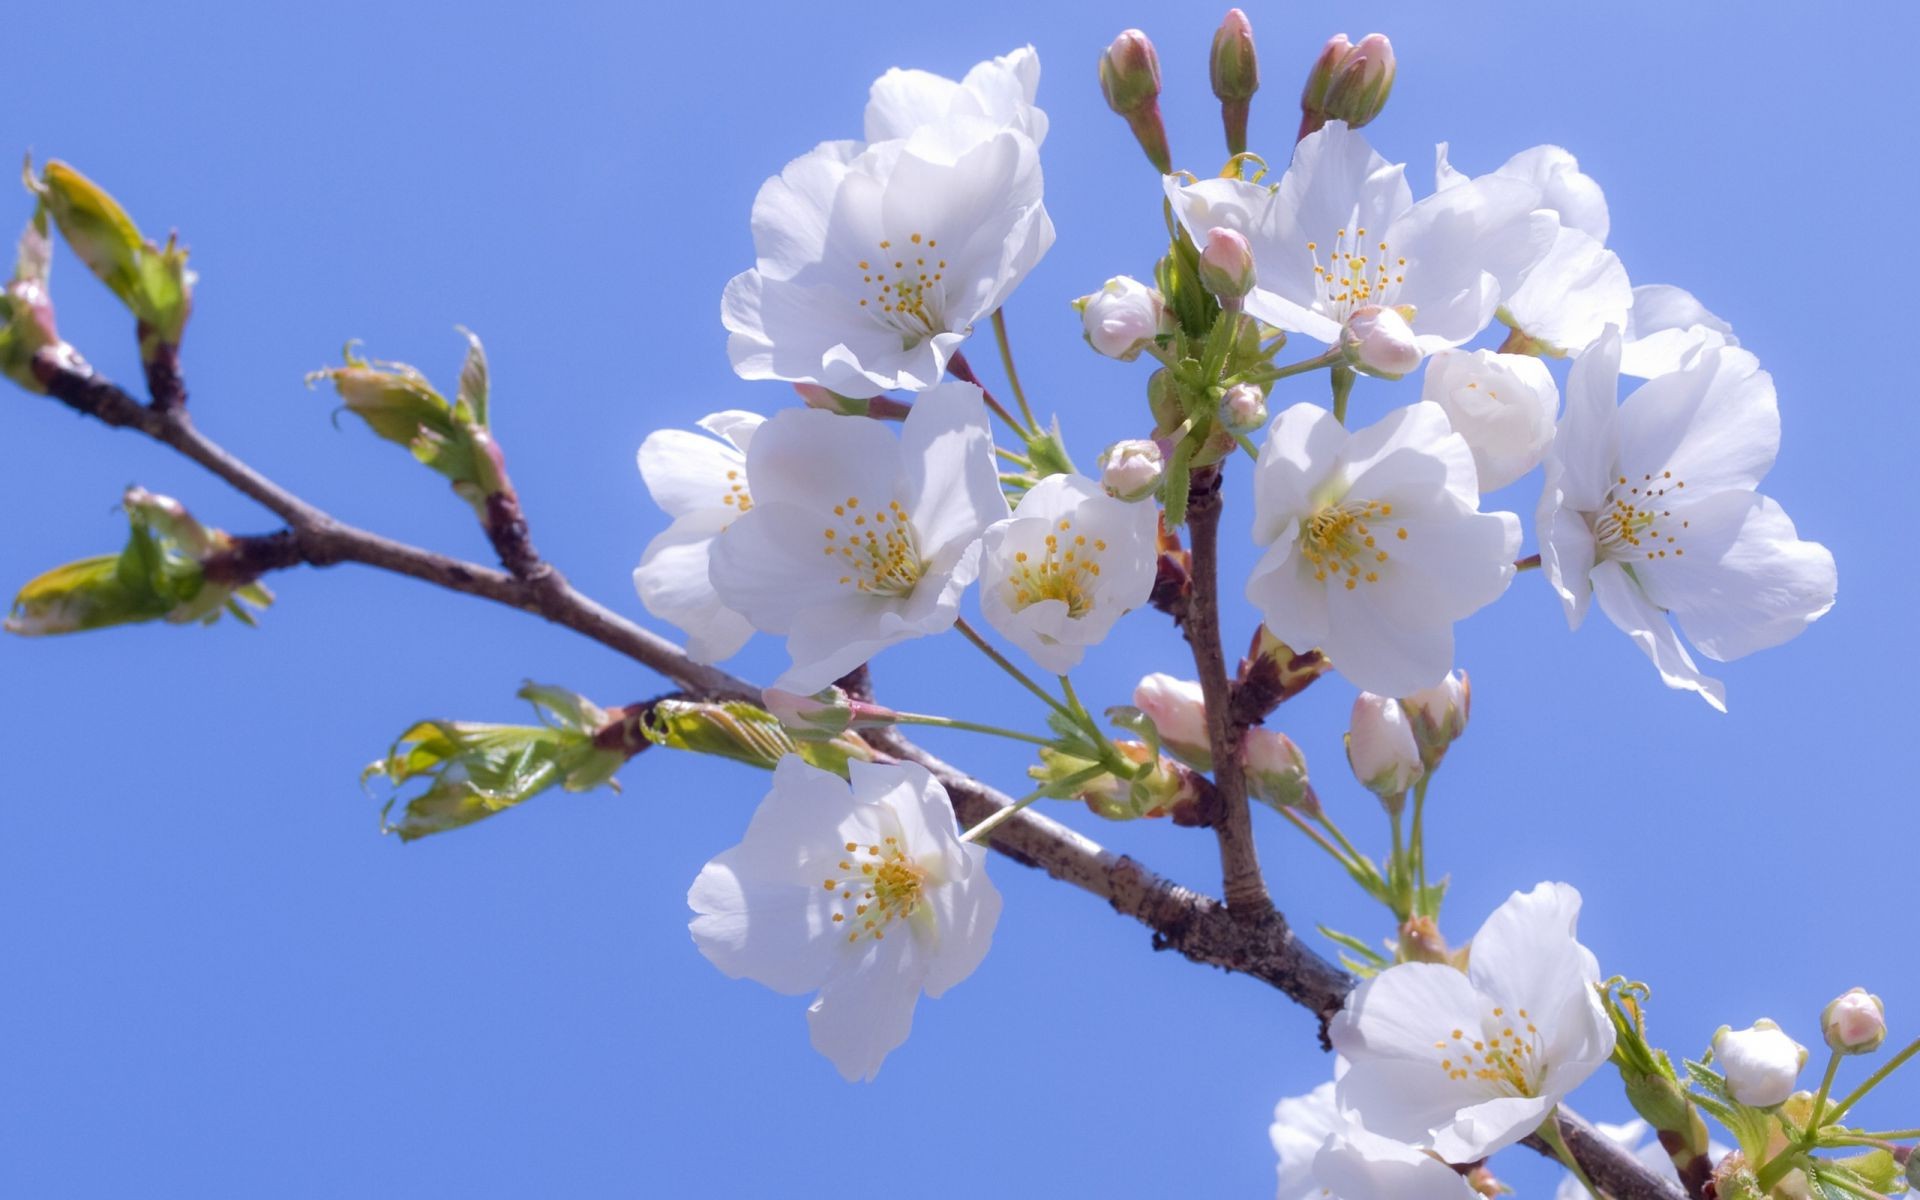 цветы на деревьях вишня цветок природа филиал дерево дружище флора блюминг рост лепесток лист на открытом воздухе сливы сезон яблоко лето сад абрикос